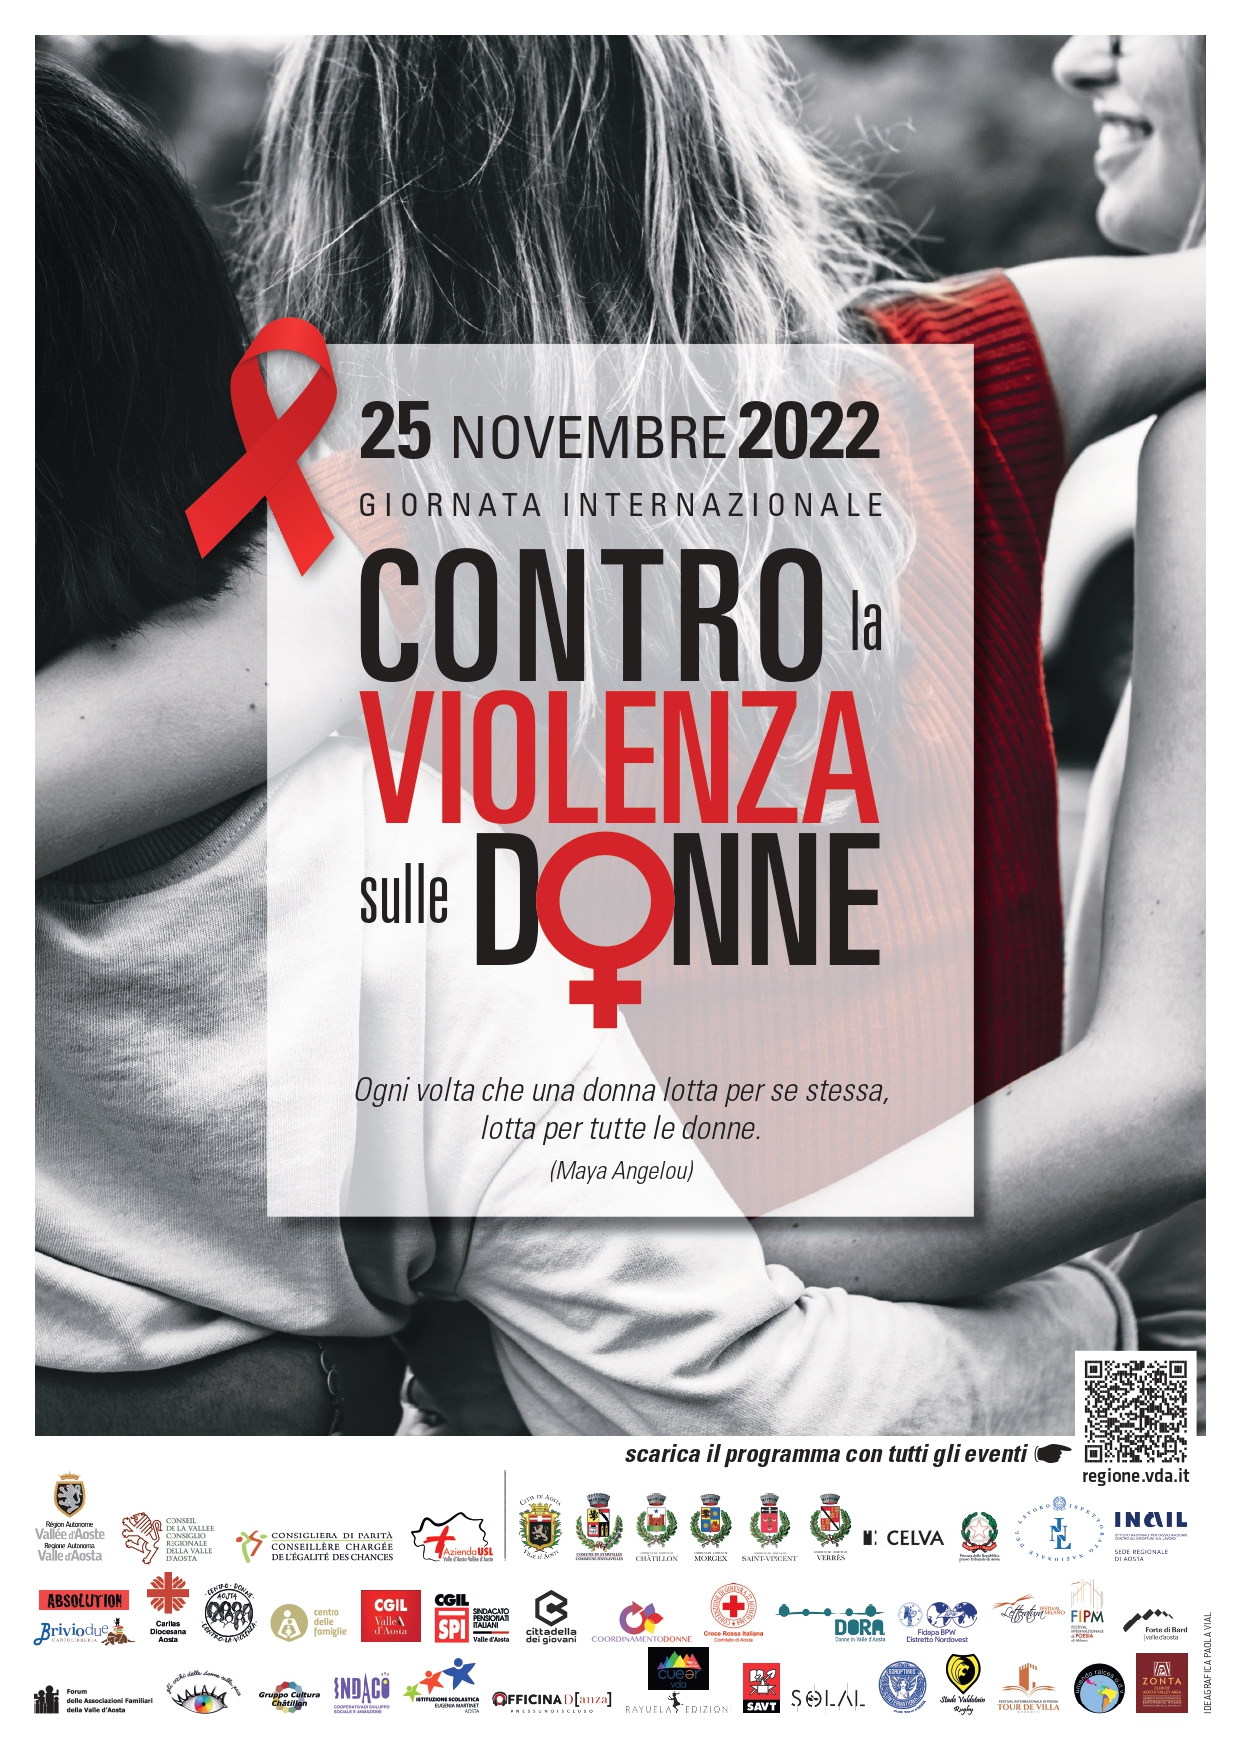 25 novembre 202 - Giornata internazionale contro la violenza sulle donne